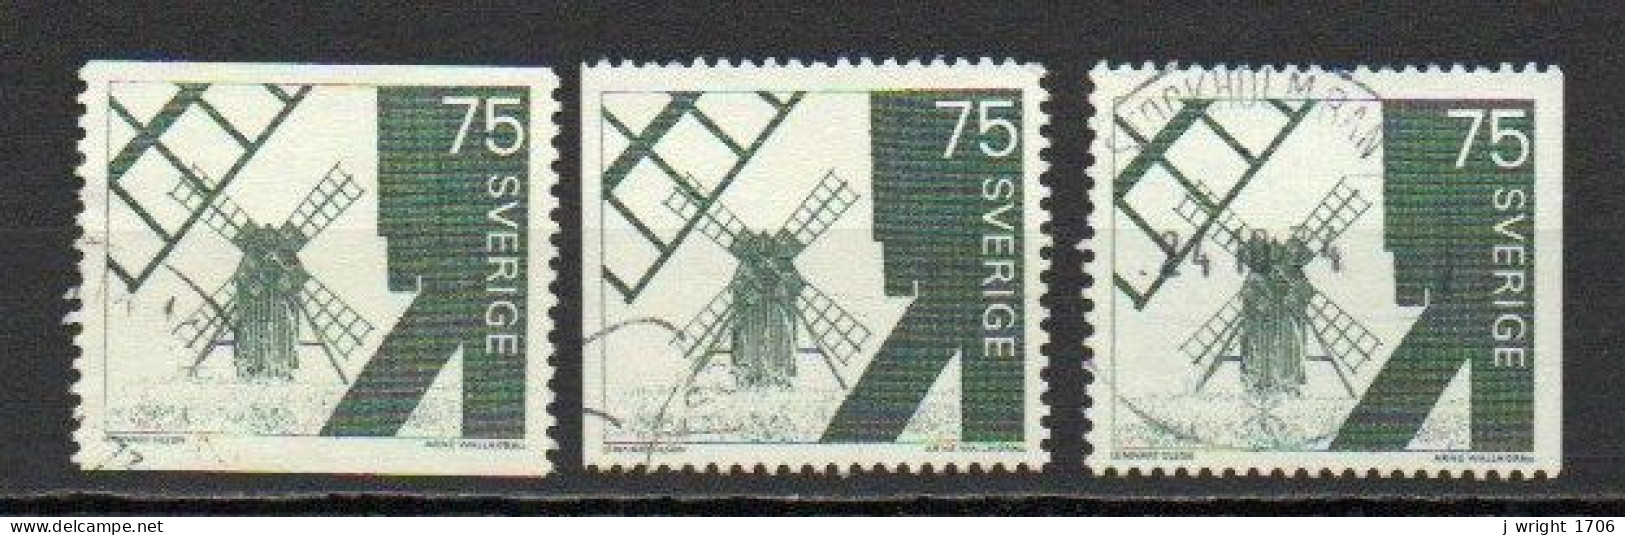 Sweden, 1971, Windmill Ölana Island, 75ö, USED - Usati